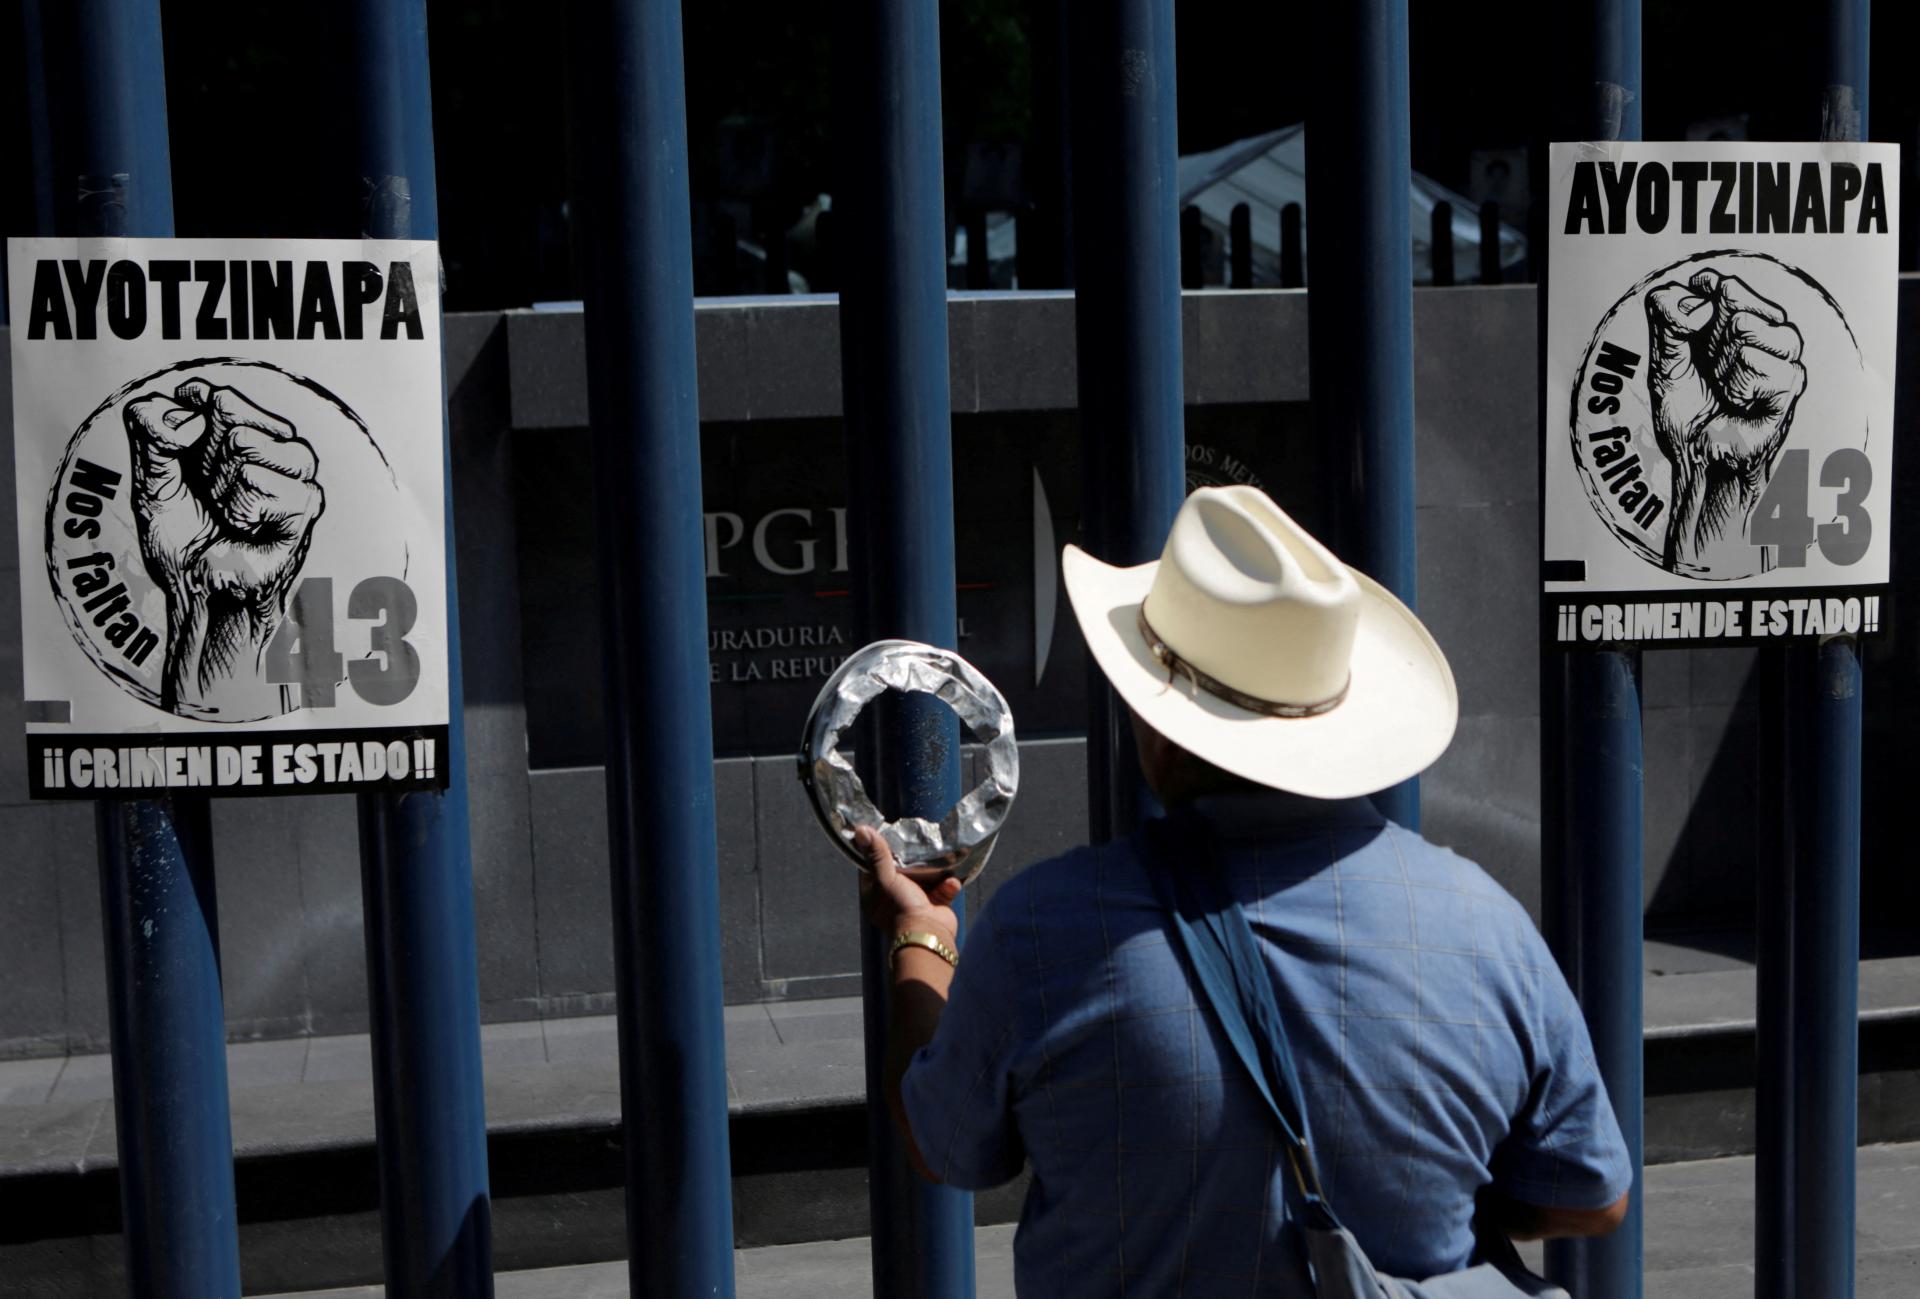 Dans le sud du Mexique, des hommes armés ont enlevé 14 policiers